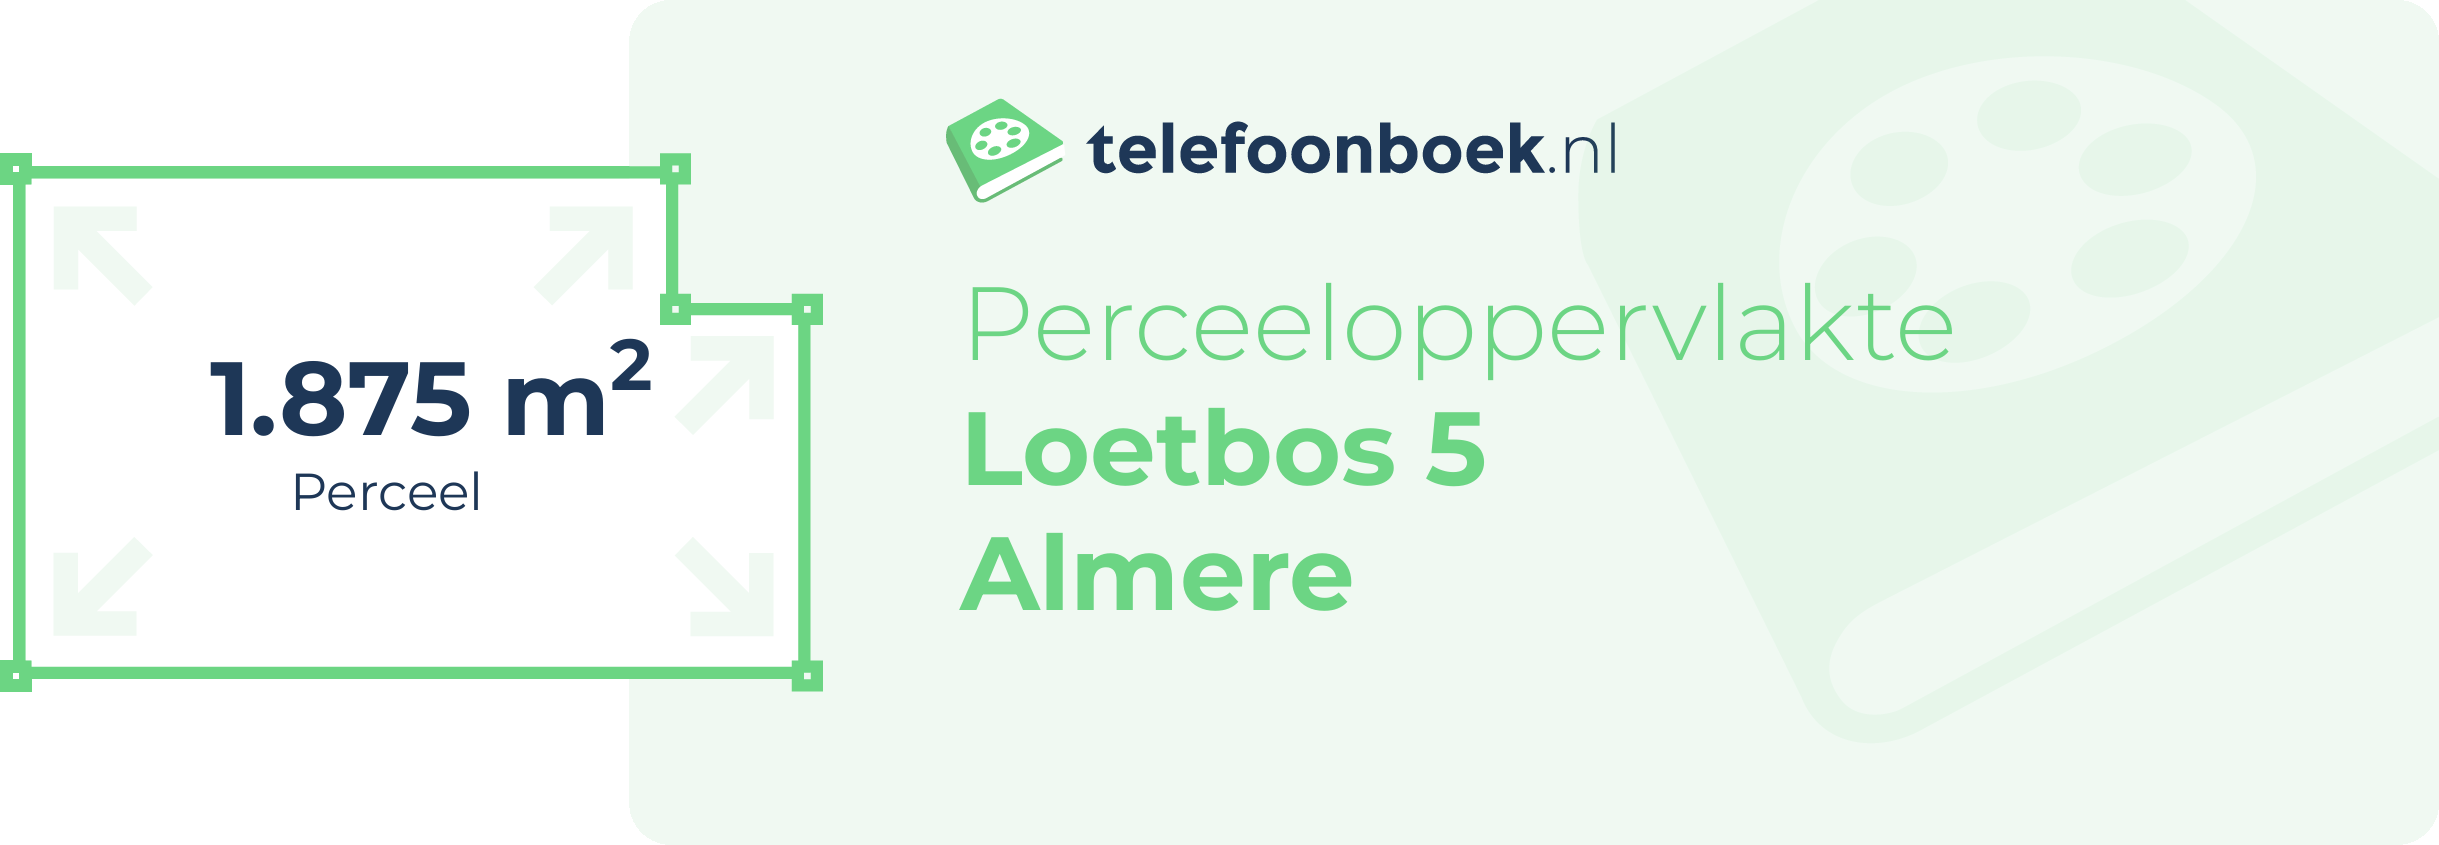 Perceeloppervlakte Loetbos 5 Almere